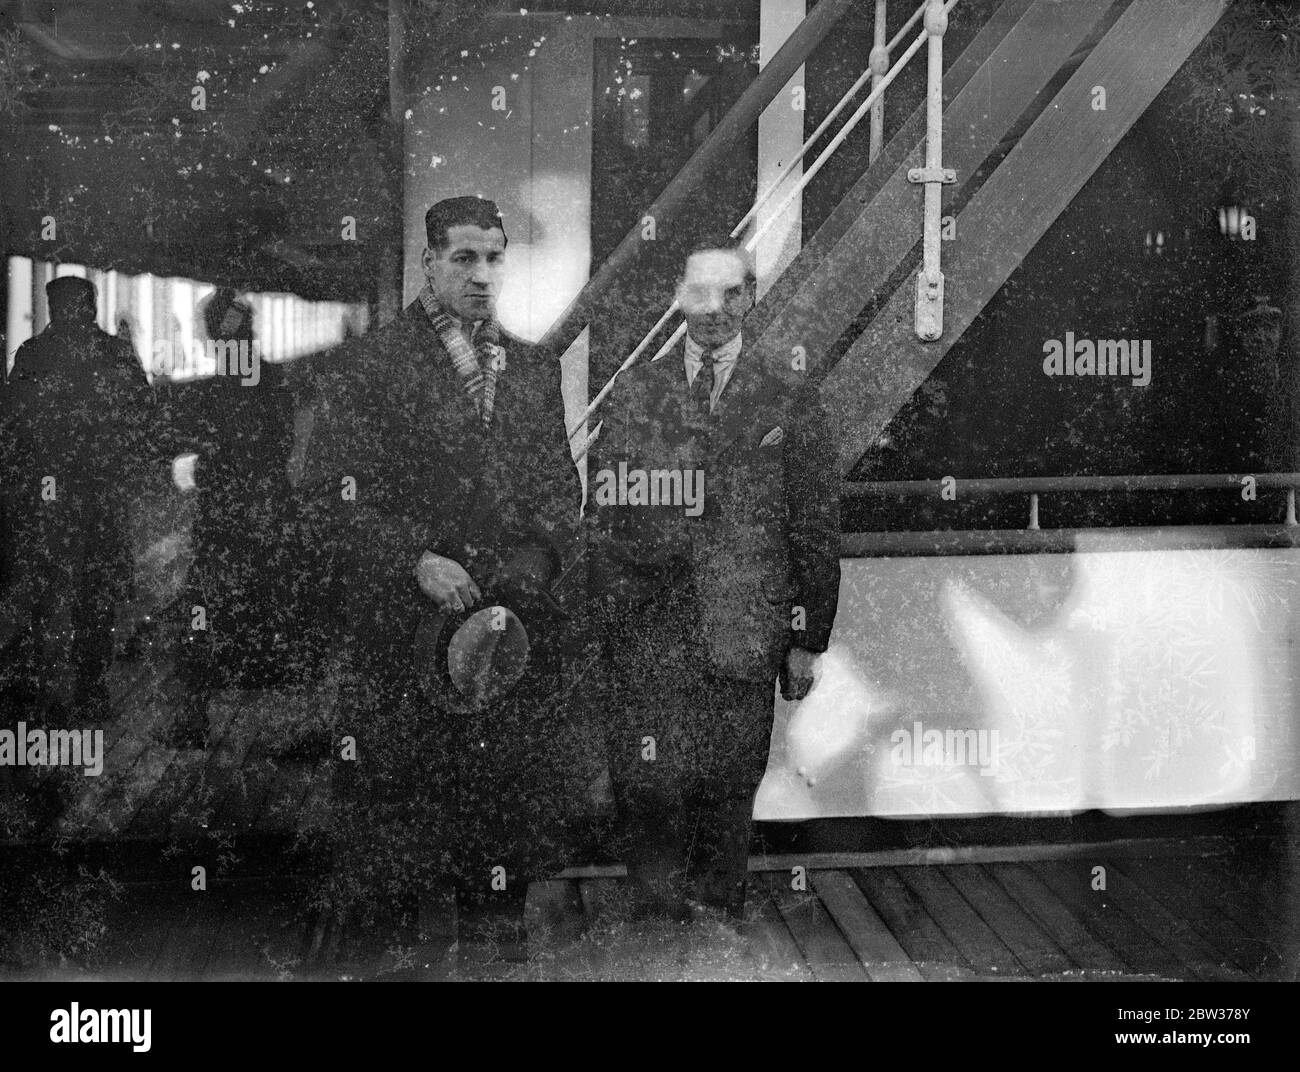 Len Harvey und seine Frau verlassen Southampton auf weihnachtskreuzfahrt. Len Harvey, der britische Schwergewichtsmeister, verließ Southampton mit seiner Frau und seinem Sohn auf dem Liner Arandora Star für eine Weihnachtskreuzfahrt. Auf dem gleichen Boot war der Yorkshire Kricketspieler Herbert Sutcliffe mit seiner Frau und Familie. Foto zeigt ; Len Harvey und Herbert Sutcliffe an Bord des Arandora Star in Southampton . 18 Dezember 1933 Stockfoto